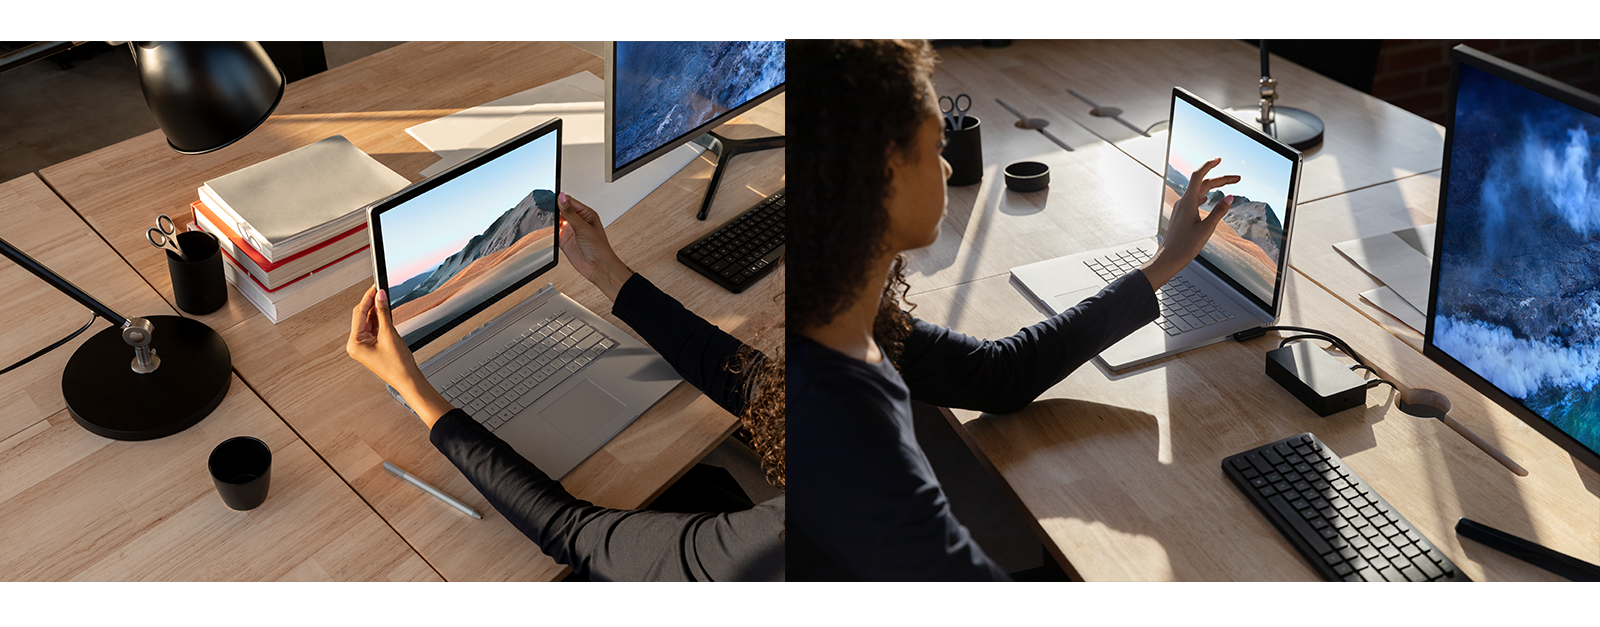 Surface Book 3 står på en arbejdsplads. På venstre billede adskiller en person skærmen og tastaturet, på højre billede skriver en person på skærmen.